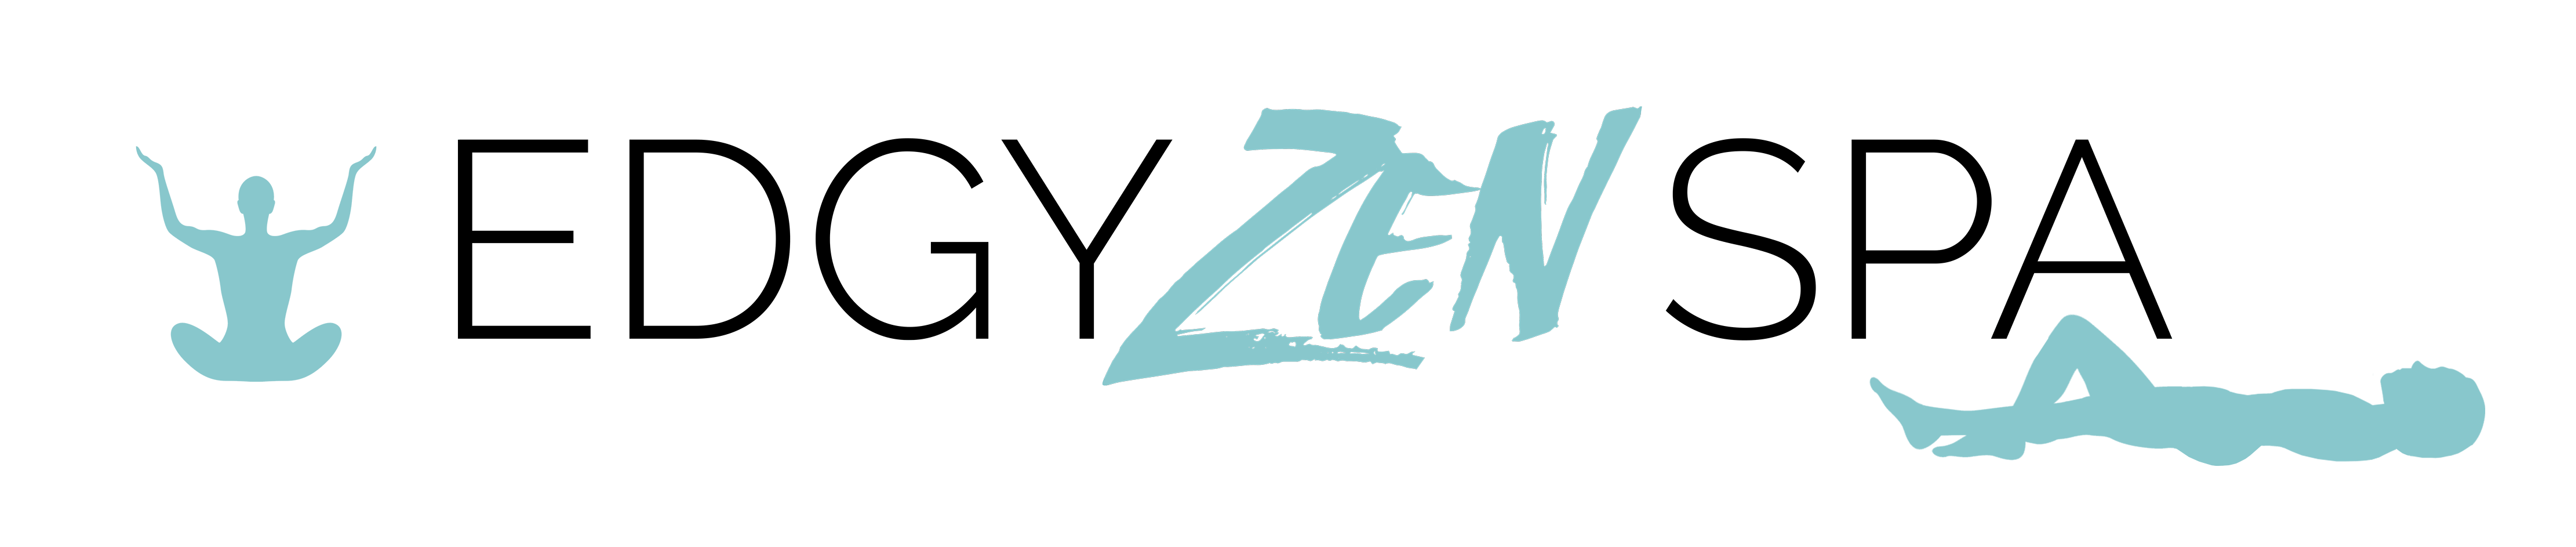 Zen Spa Logo - Relaxing Wellness Spa and Yoga Studio in Alexandria, VA | Edgy ZEN Spa